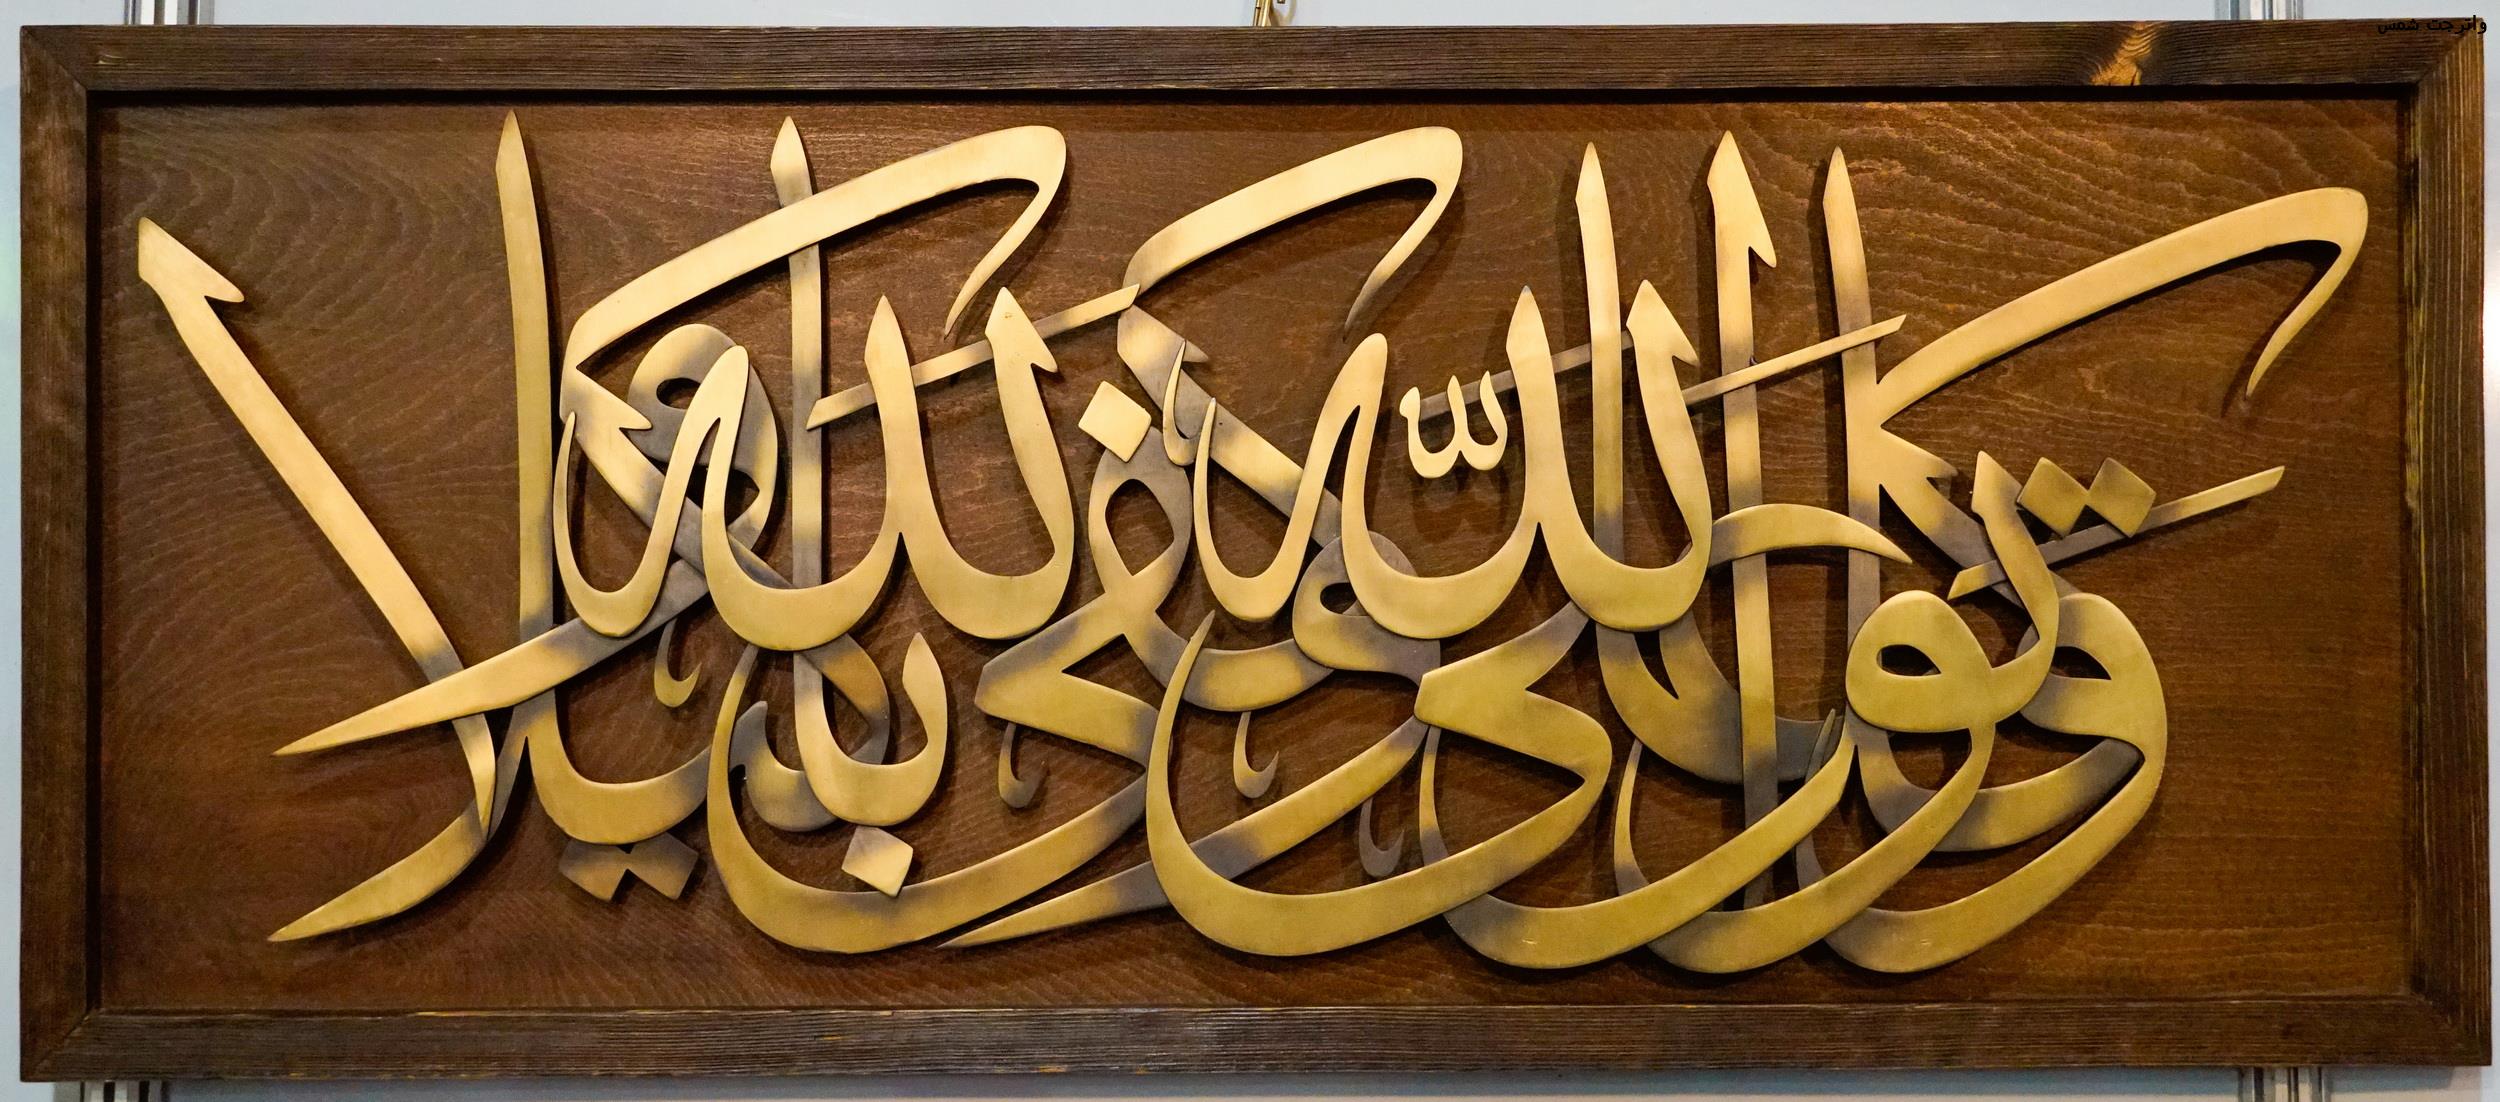 خوشنویسی برجسته با فلز- خوشنویسی مذهبی با فلز-تابلوی فلزی و توکل علی الله و کفی -خوشنویسی مذهبی